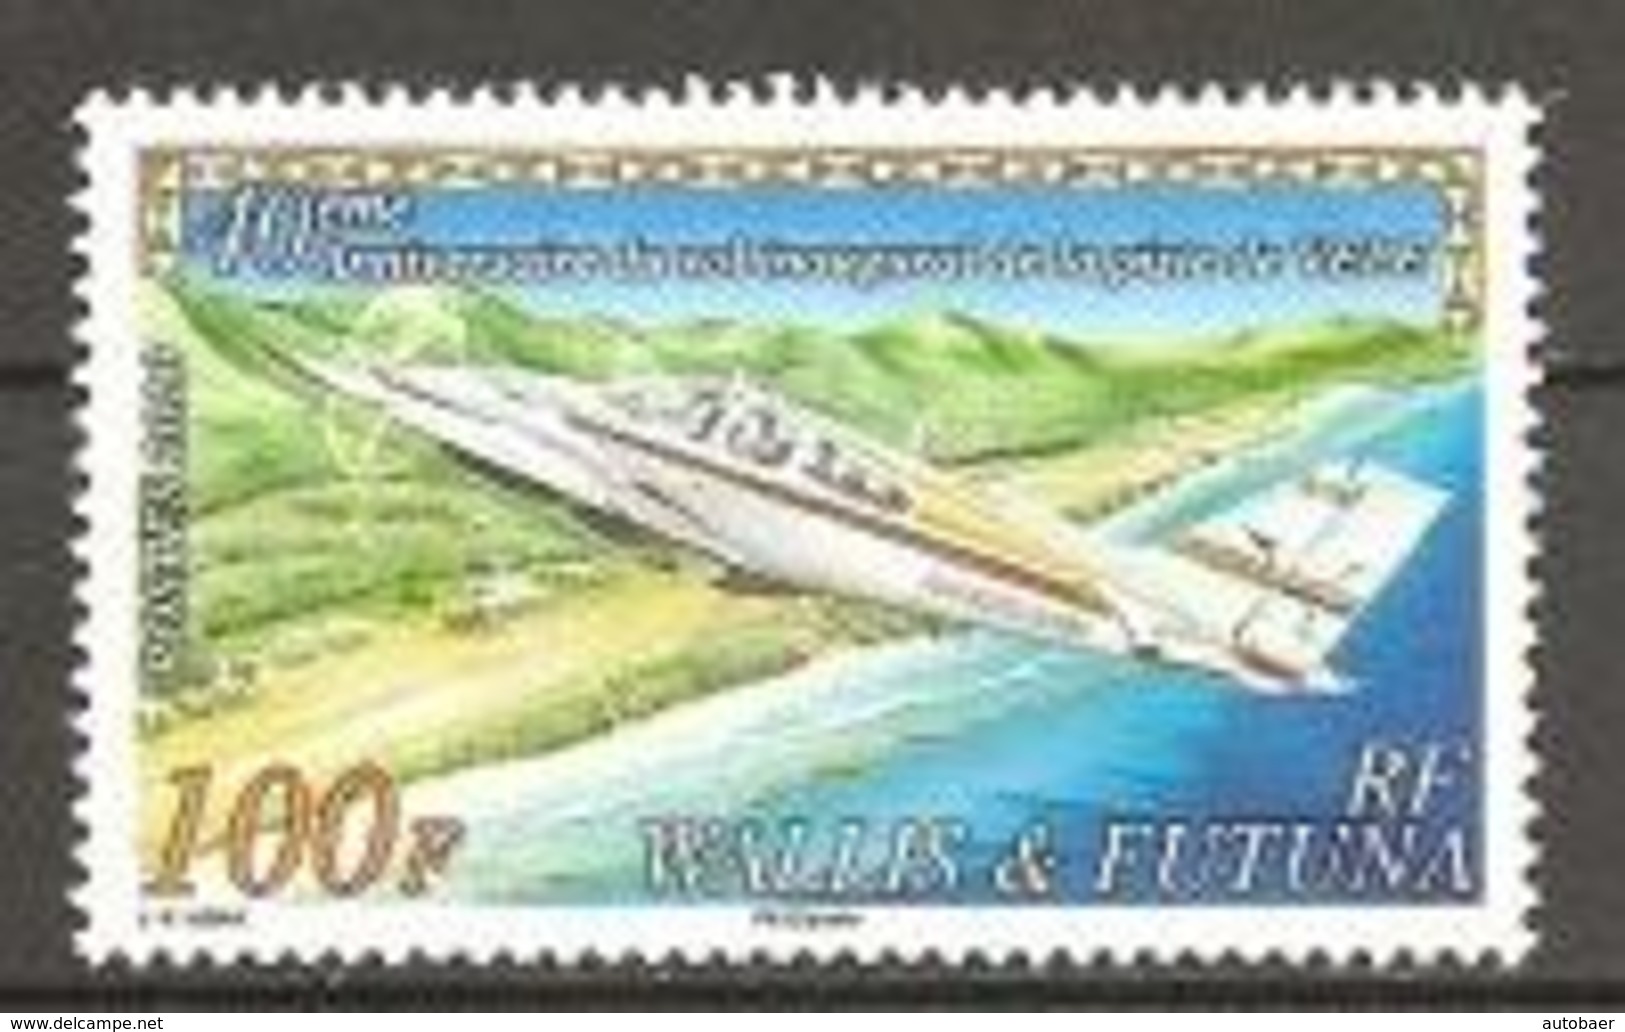 Wallis Und Et Futuna 2010 Aeroport Airport Flugplatz Vele Michel No. 1014 MNH Postfrisch Neuf - Unused Stamps